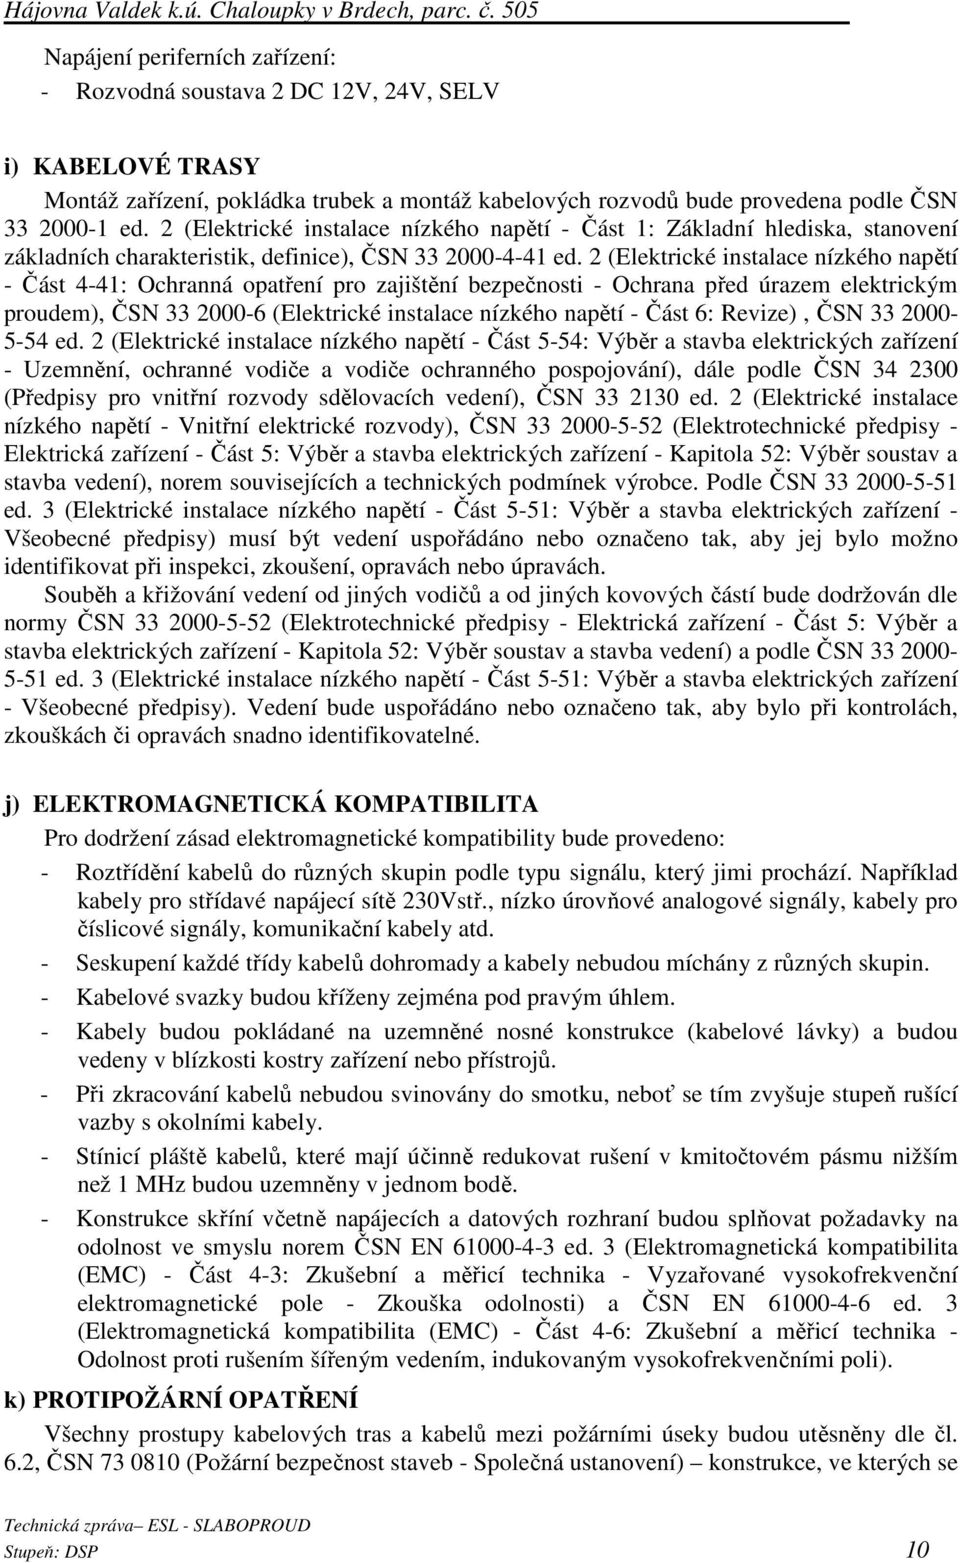 2 (Elektrické instalace nízkého napětí - Část 1: Základní hlediska, stanovení základních charakteristik, definice), ČSN 33 2000-4-41 ed.